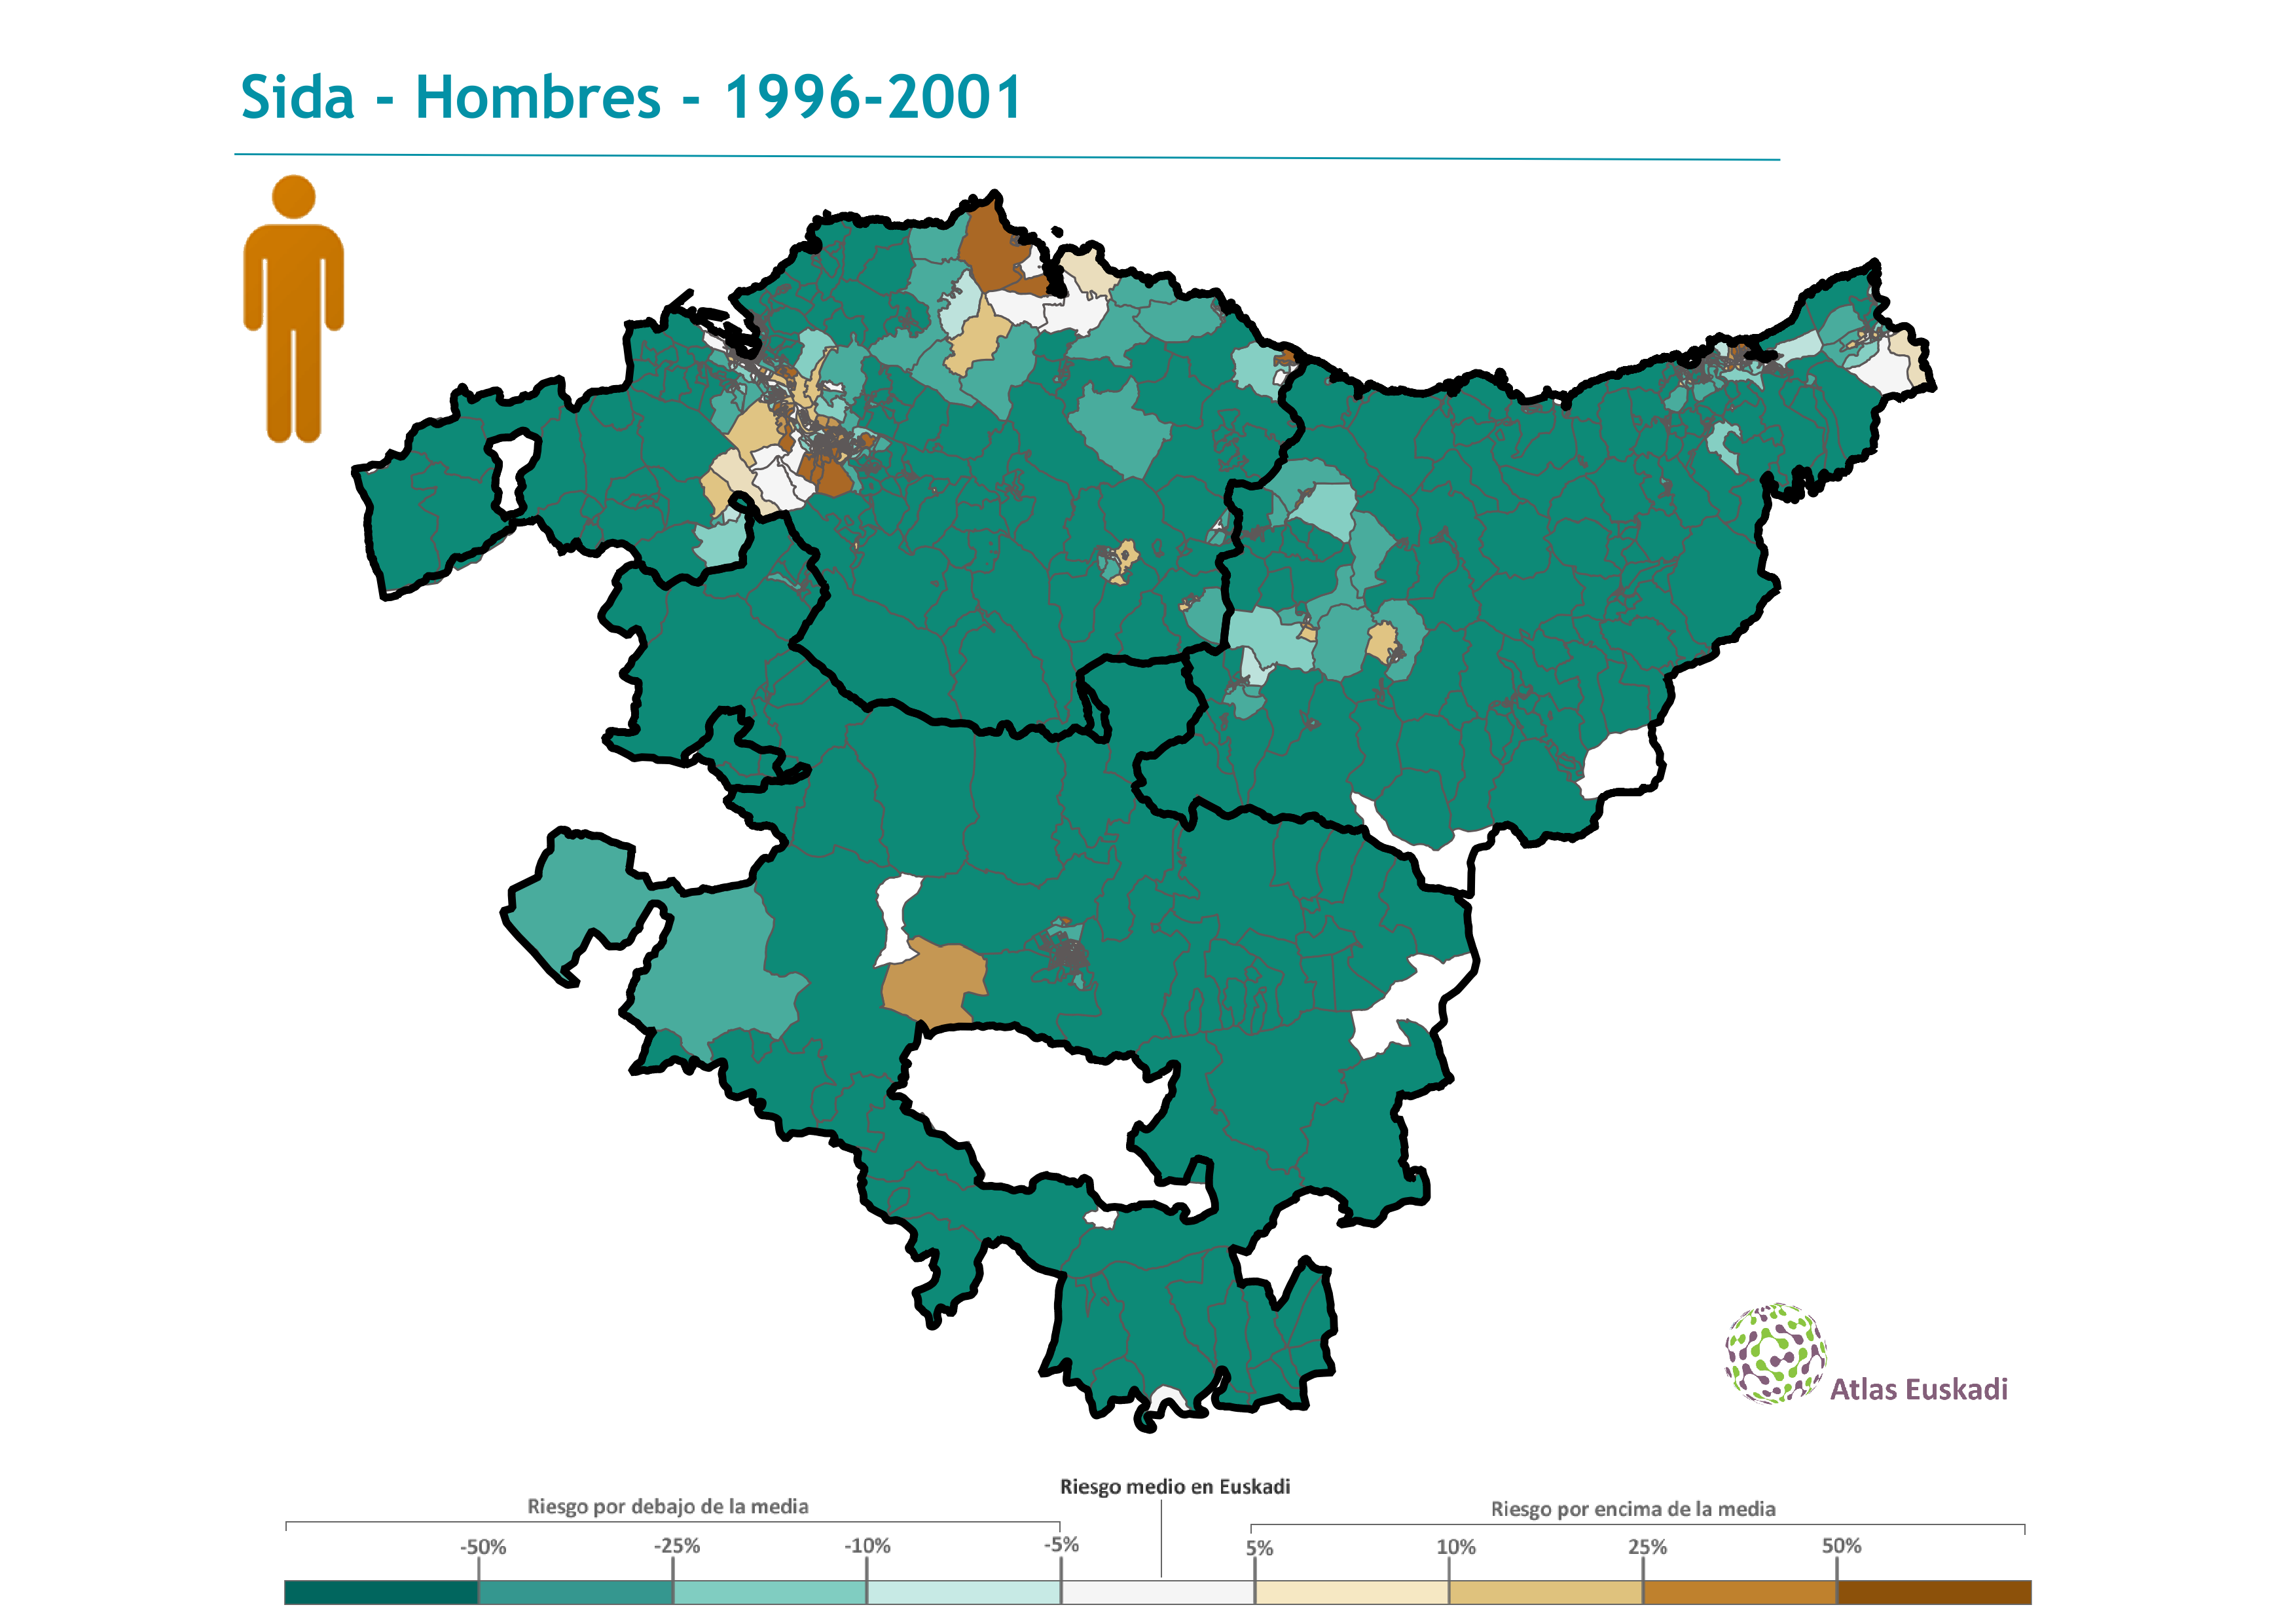 Sida hombres  1996-2001 Euskadi